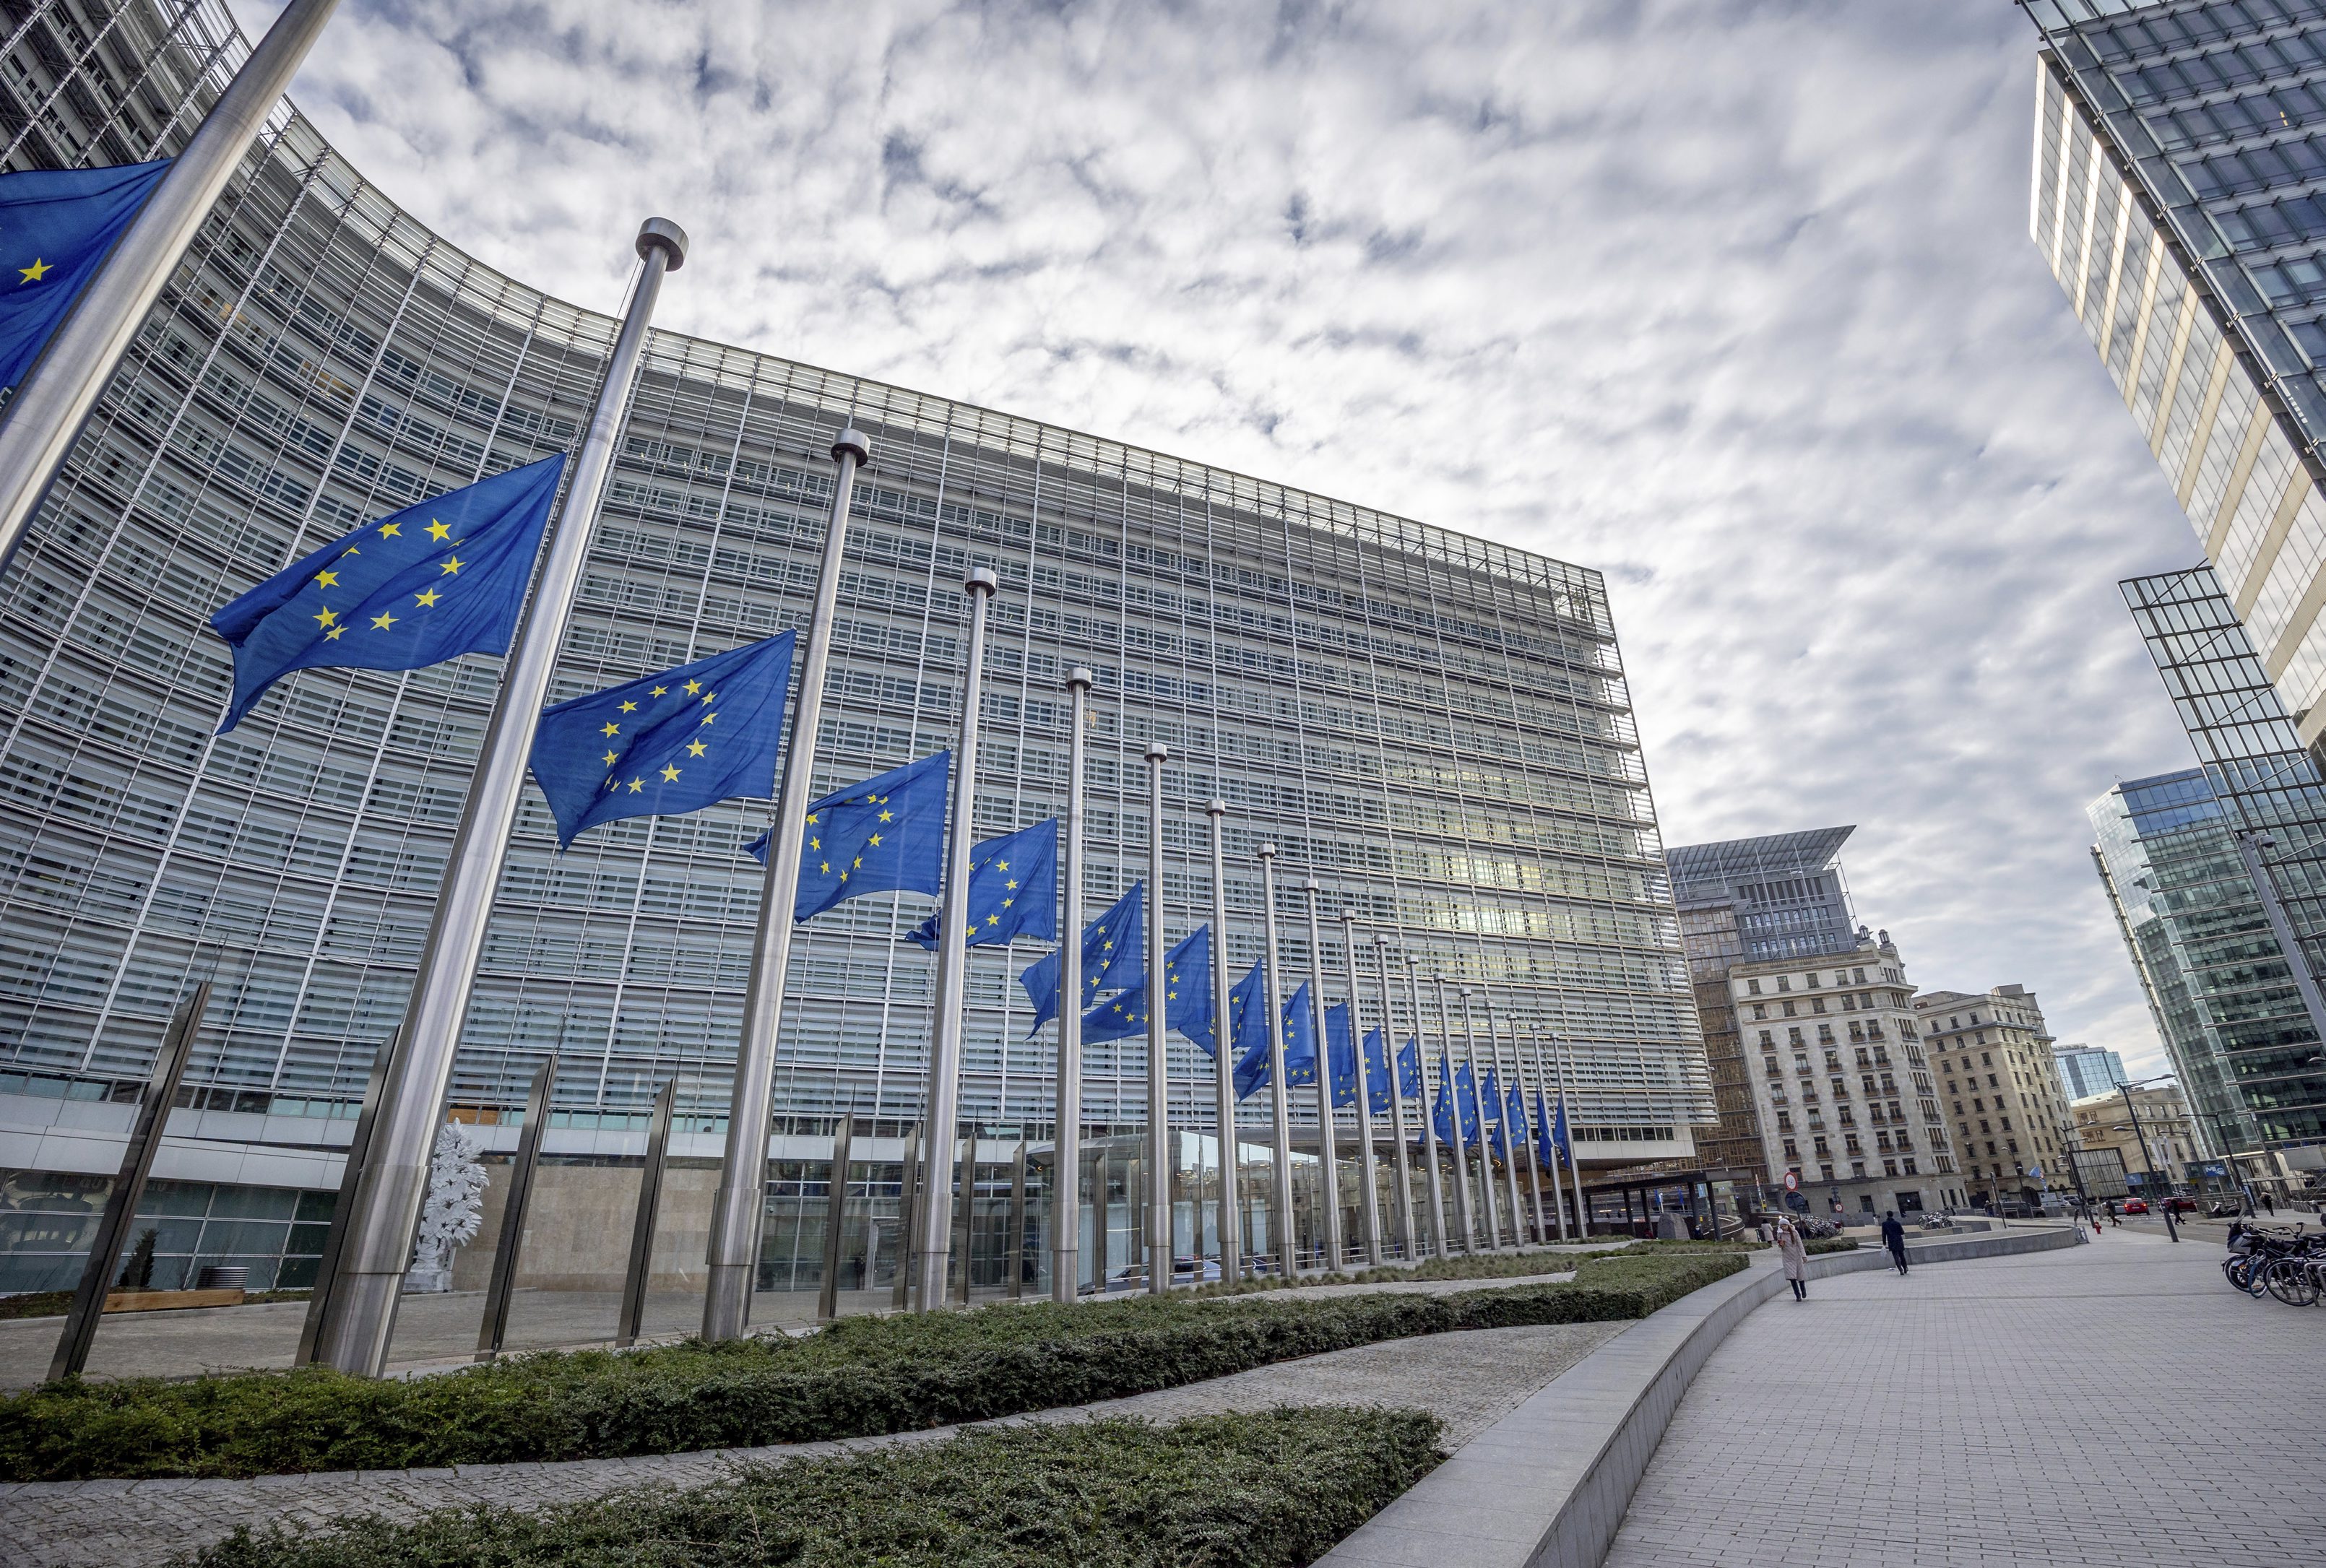 David Sassoli, az Európai Parlament elnöke emlékére félárbócra eresztették az uniós zászlókat Brüsszelben (TASR/AP-fotó)